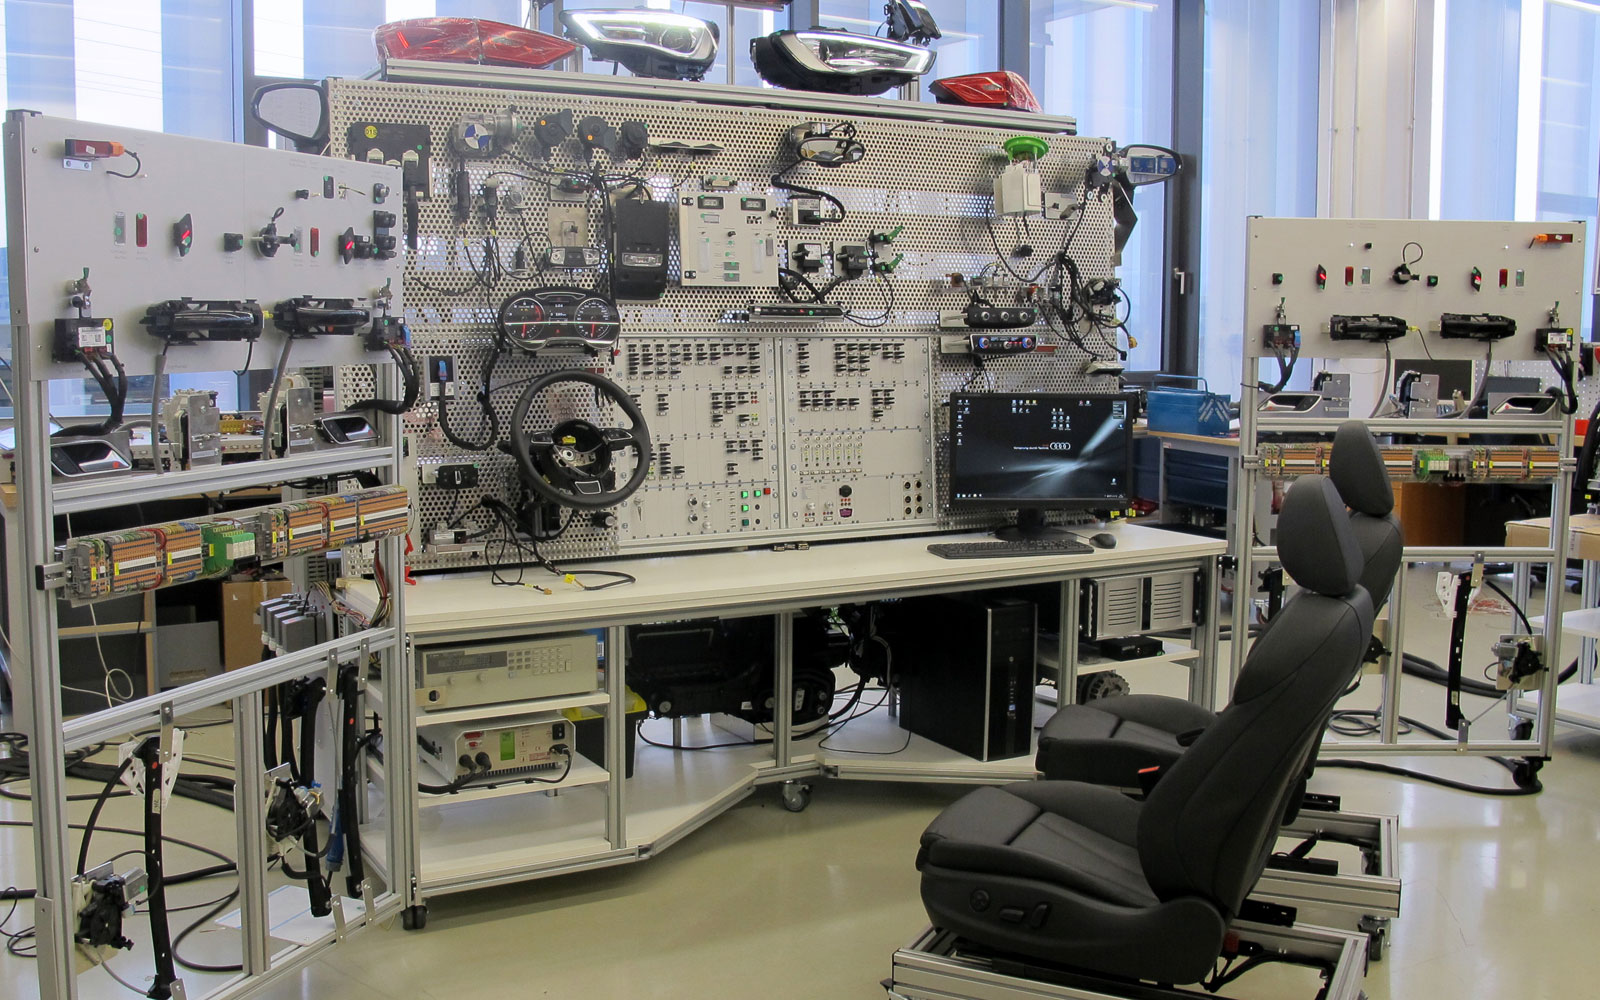 Teljes járm? elektromos rendszere a vizsgáló laboratóriumban: széles tartományú árammérések és ECU-tesztek  (forrás: BFFT Gesellschaft für Fahrzeugtechnik mbH)